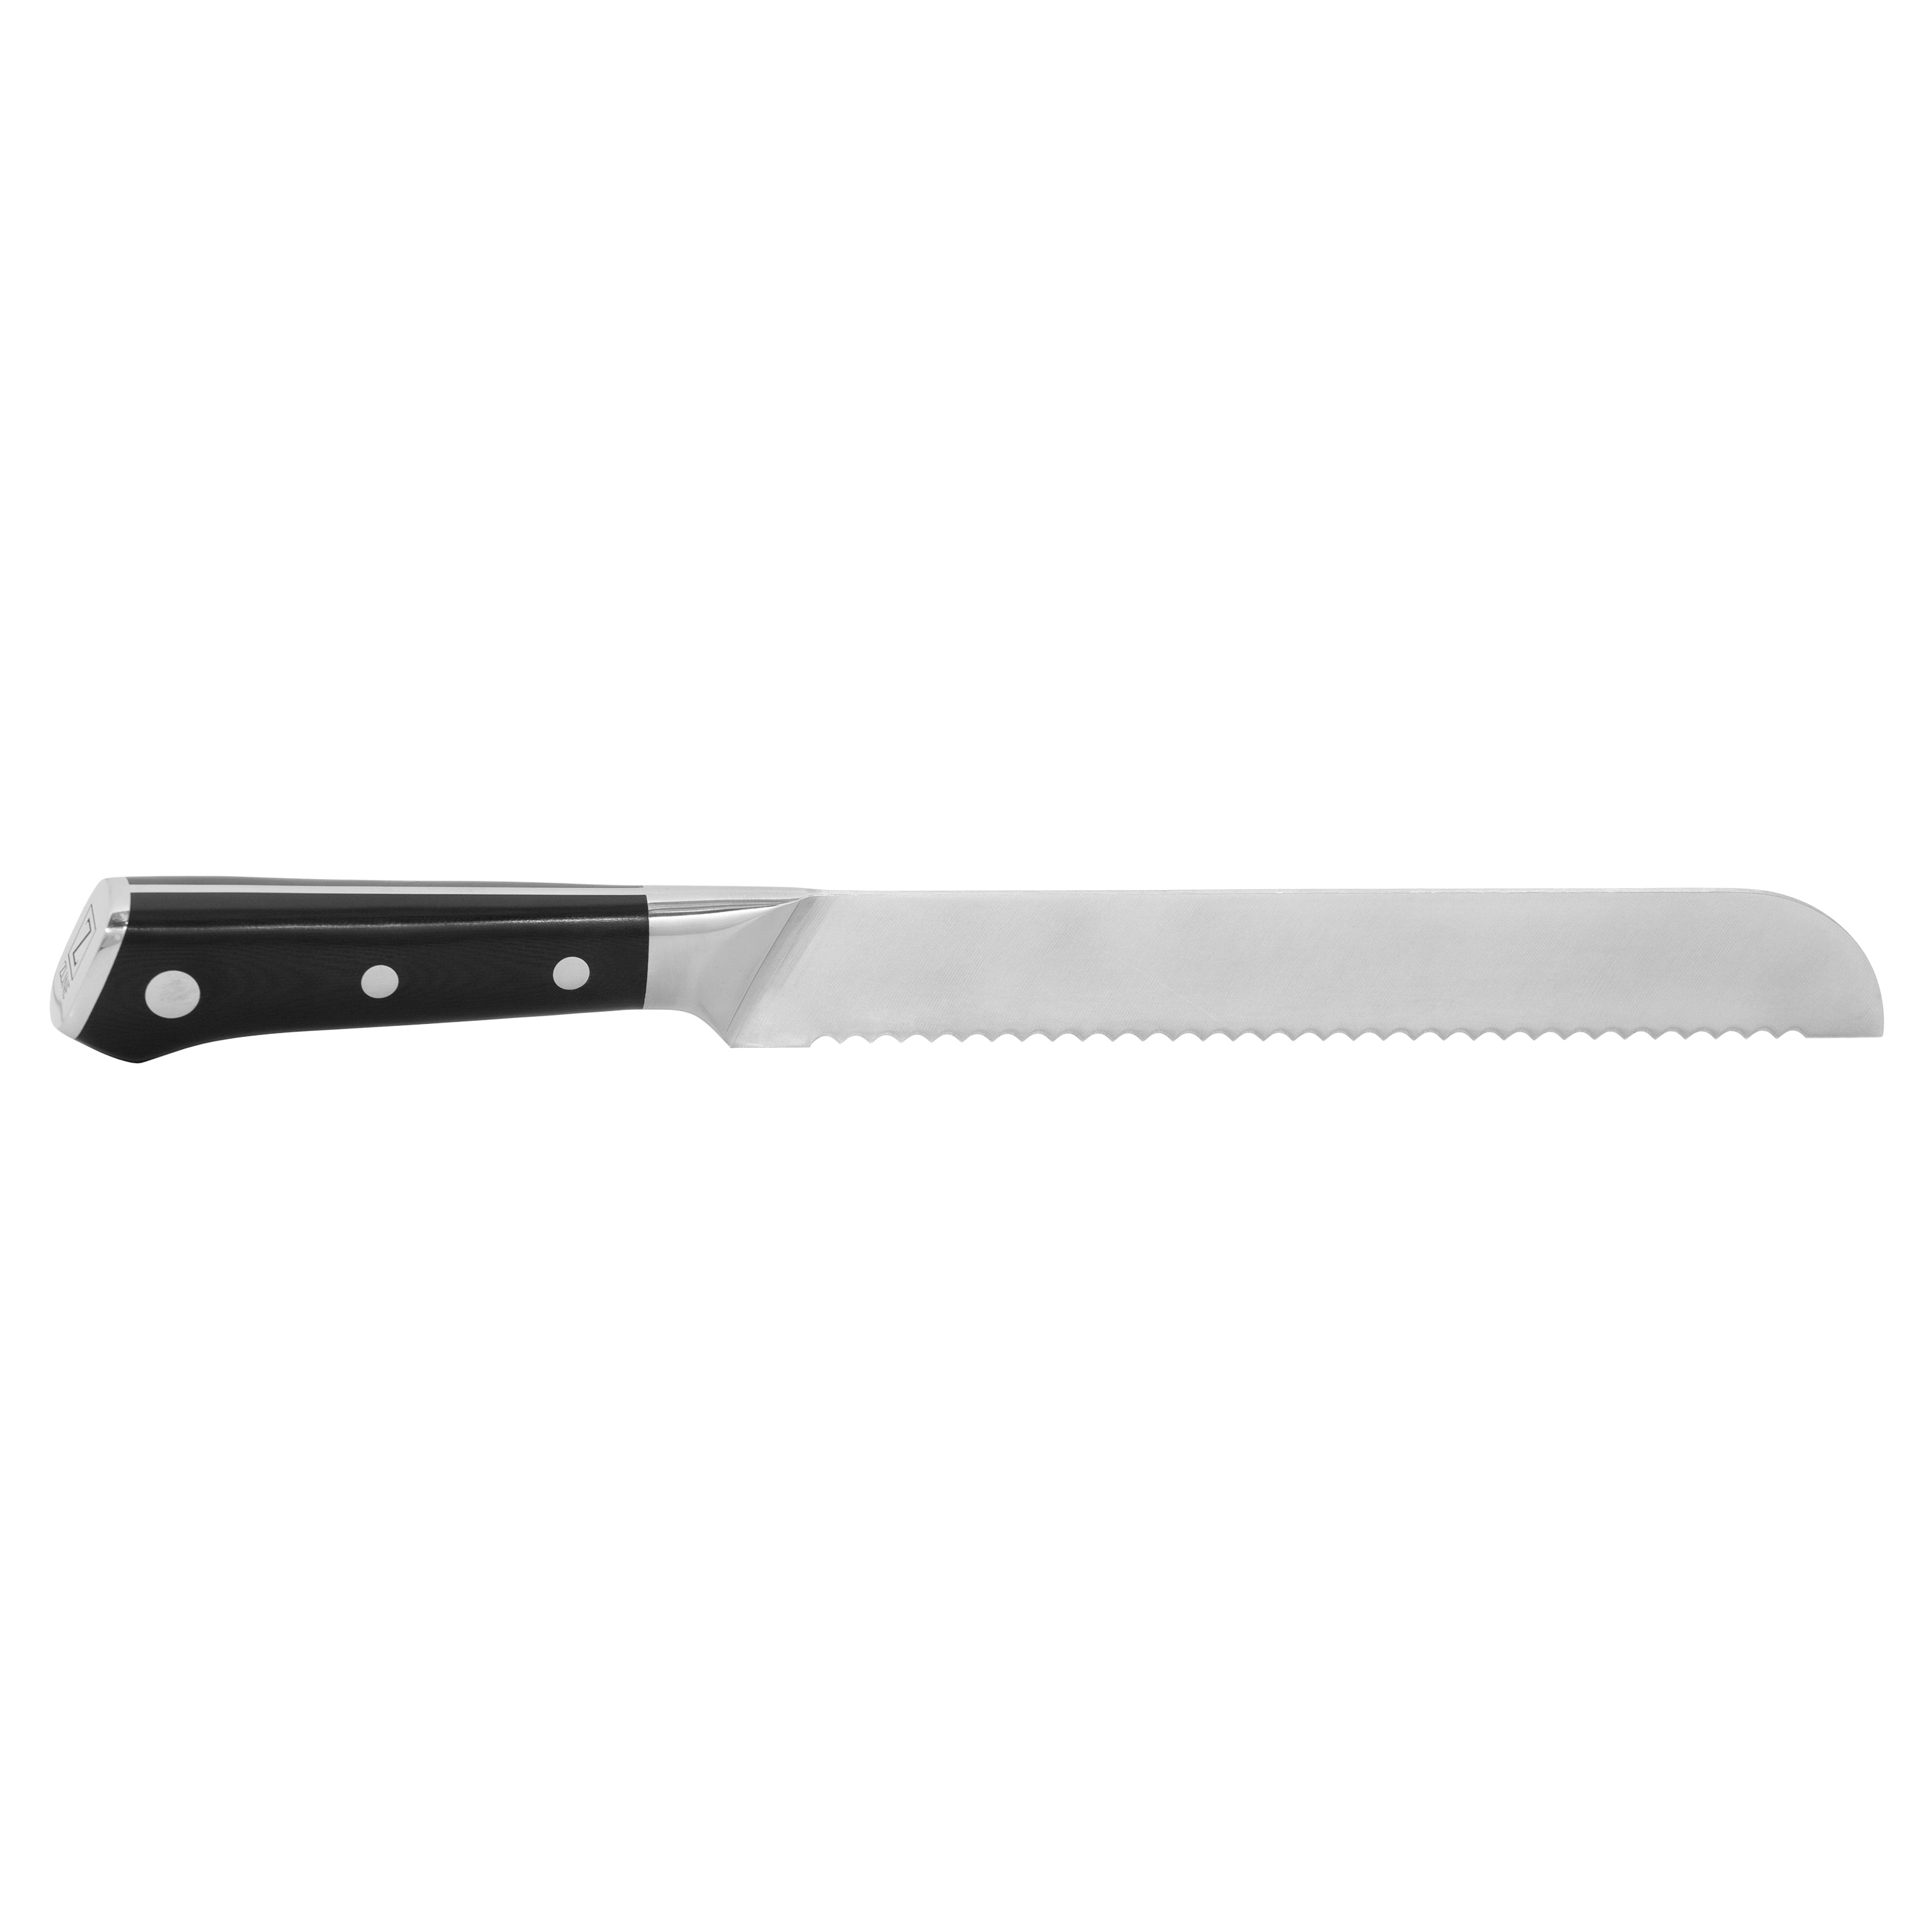 ZLINE 3-Piece Professional German Steel Kitchen Knife Set